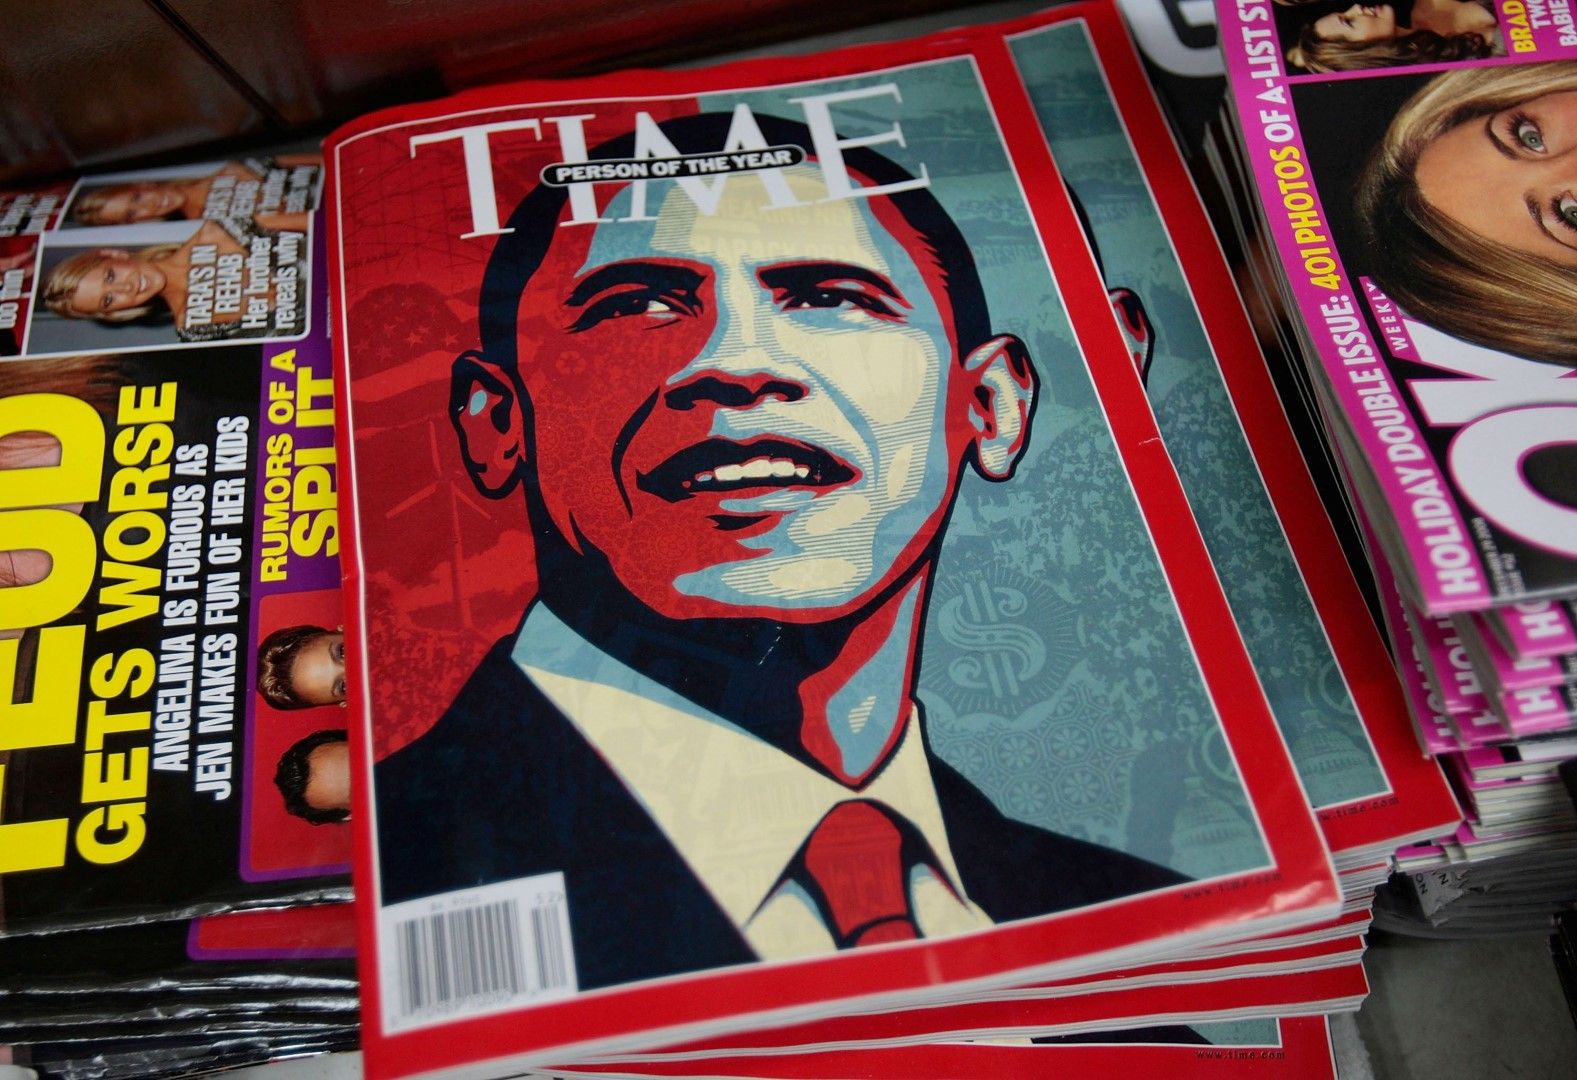 През декември 2008 г. сп. "Тайм" обяви новоизбрания президент на САЩ Барак Обама за "Личност на 2008 г."